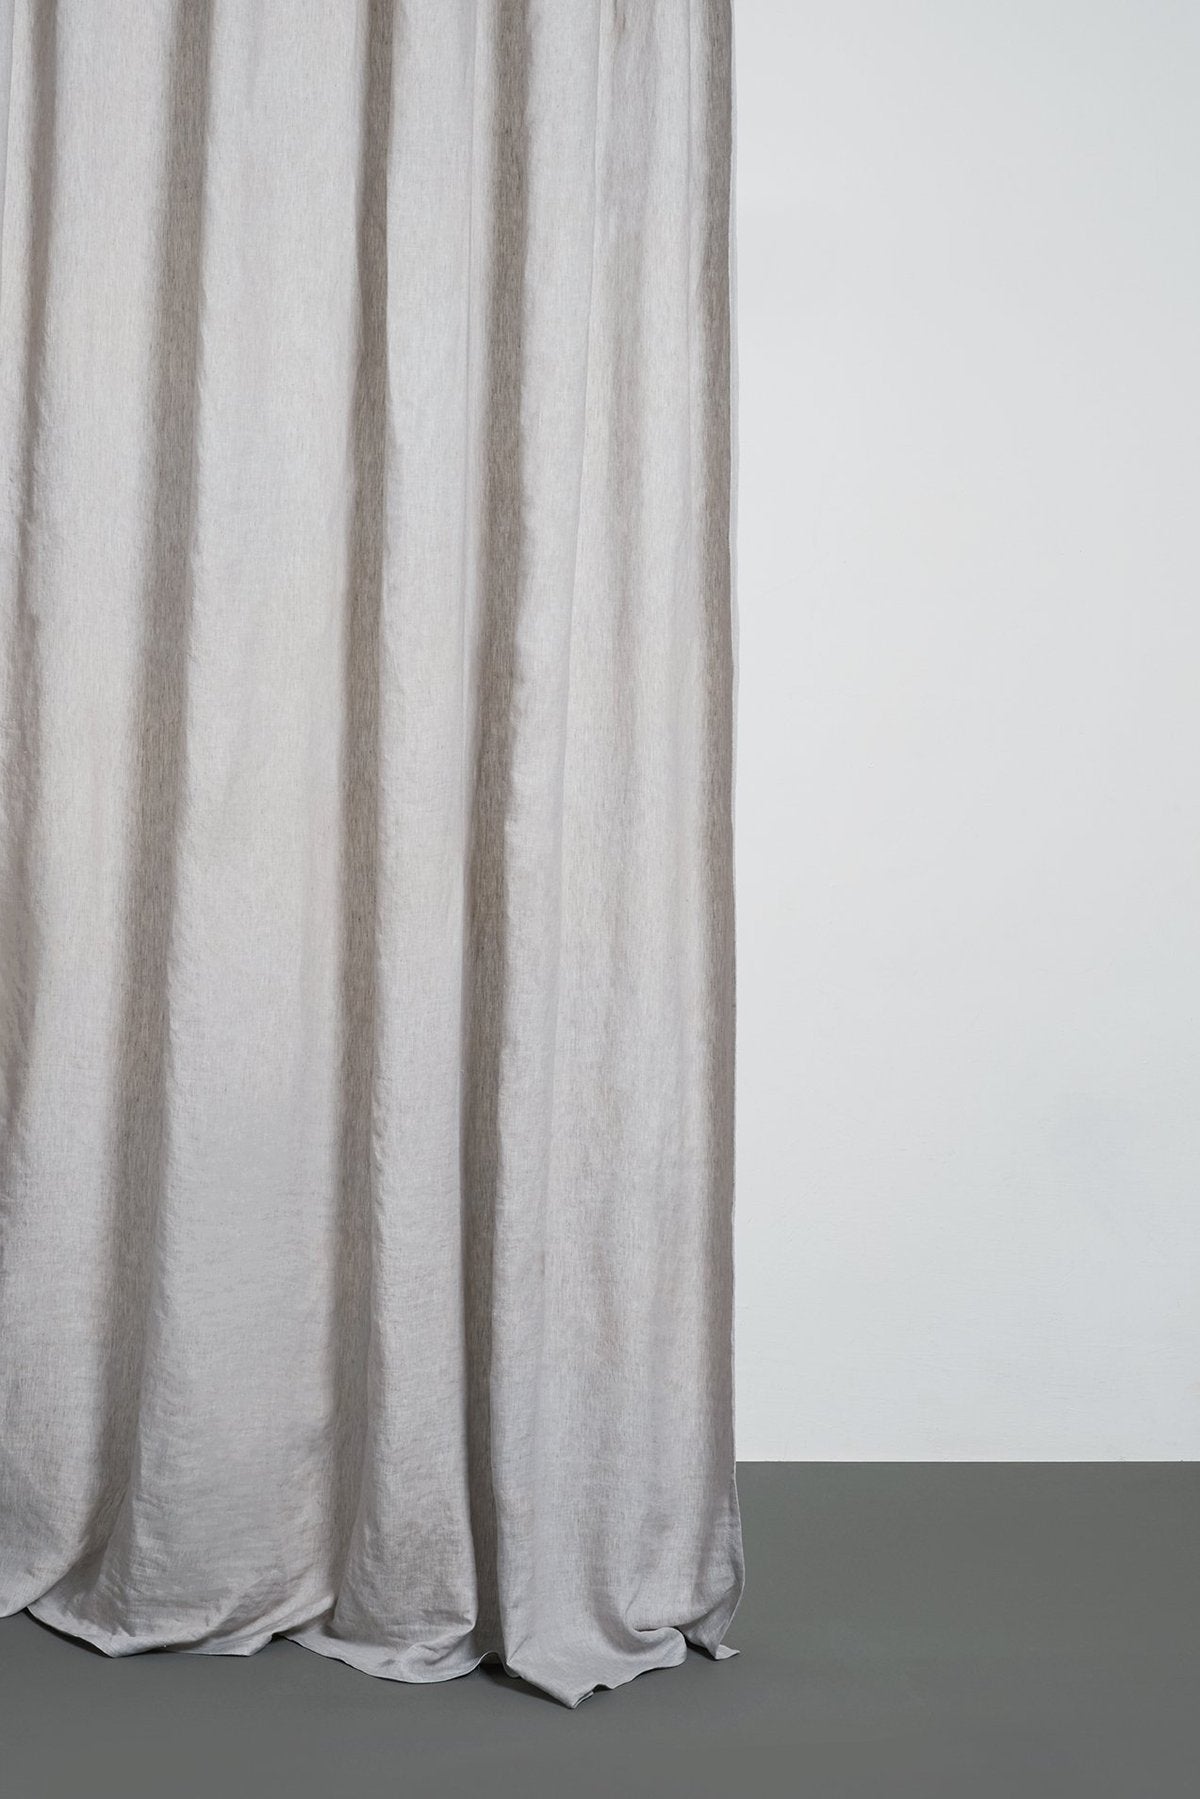 Two Tone Vorhang Stonewashed in Hellgrau präsentiert im Onlineshop von KAQTU Design AG. Vorhang ist von ZigZagZurich